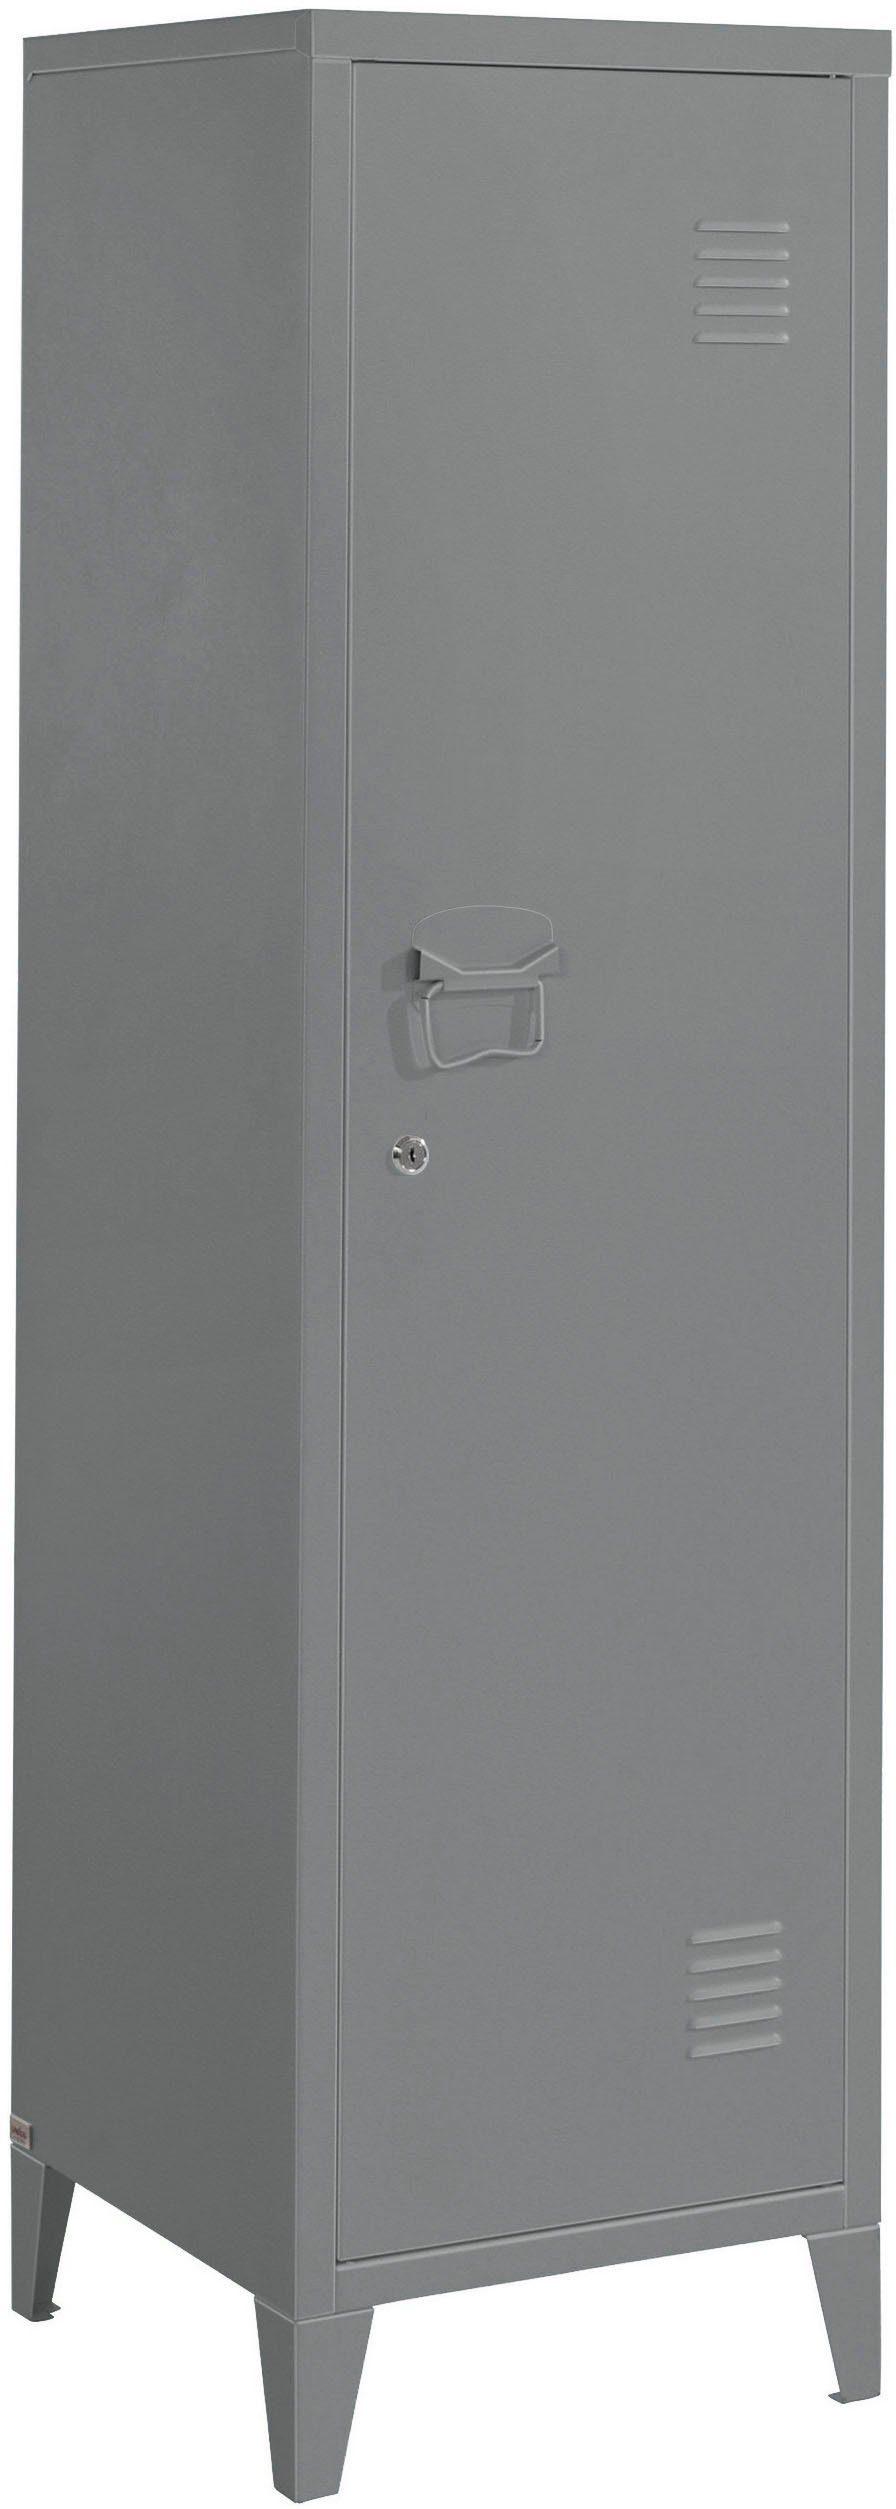 andas Midischrank Jensjorg Midischrank aus Metall, 2 x Einlegeböden hinter der Tür, Höhe 137 cm grau